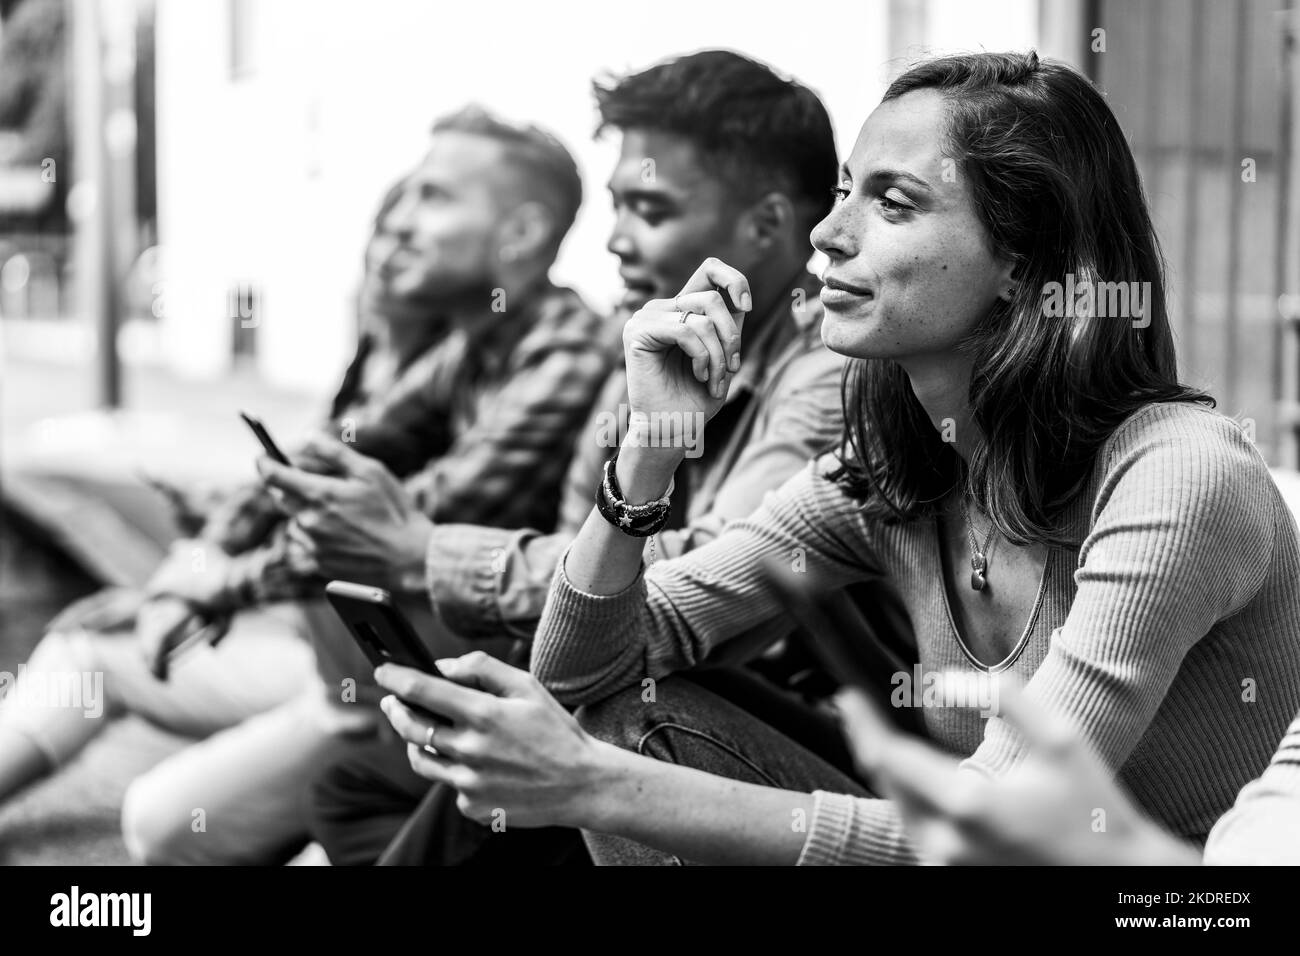 Nachdenkliche Freunde Gruppe mit Smartphone sitzen an der Universität College Hinterhof - Junge Menschen süchtig nach Handy - Technologie trauriges Leben Konz Stockfoto